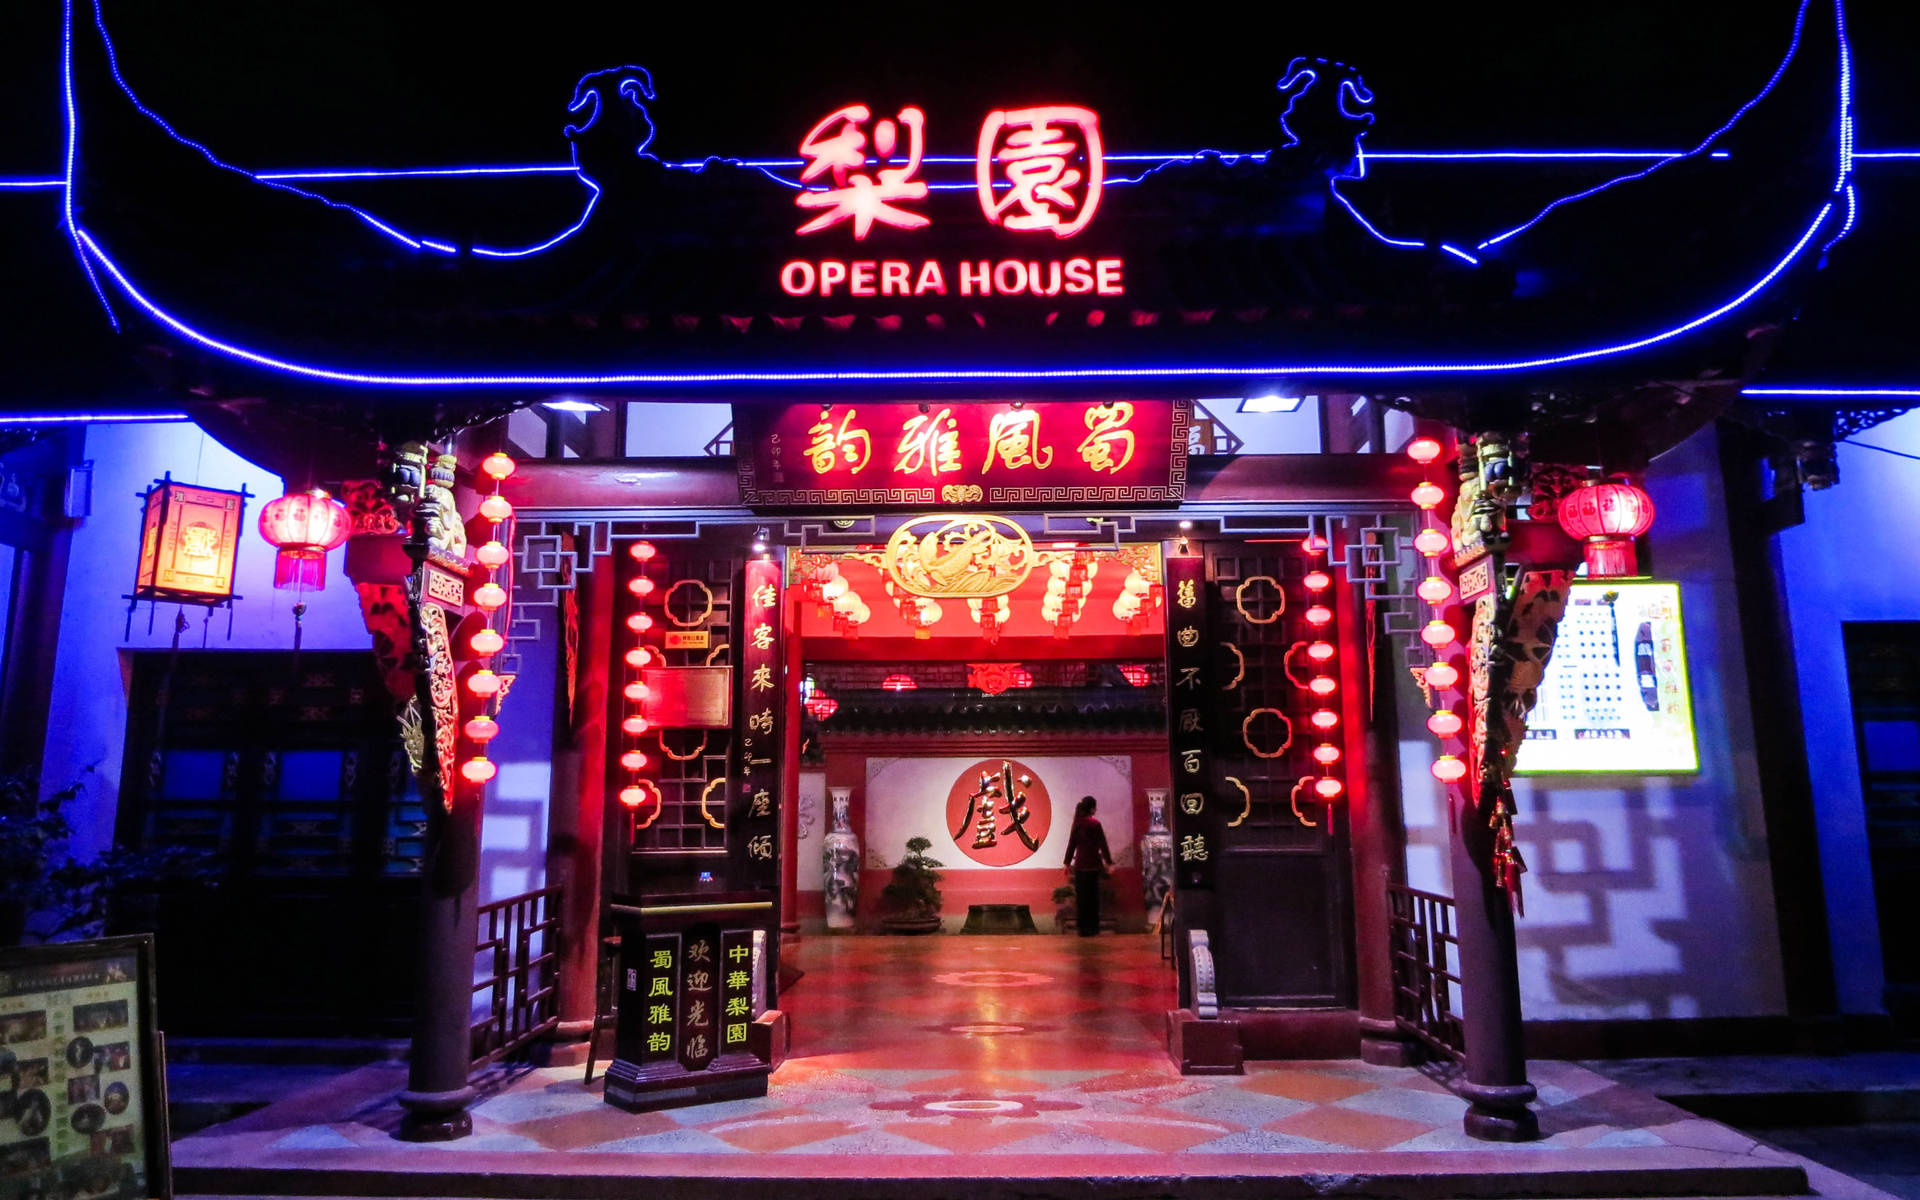 Chengdu Opera House Kan Översättas Till Chengdu Operahuset På Svenska. Wallpaper